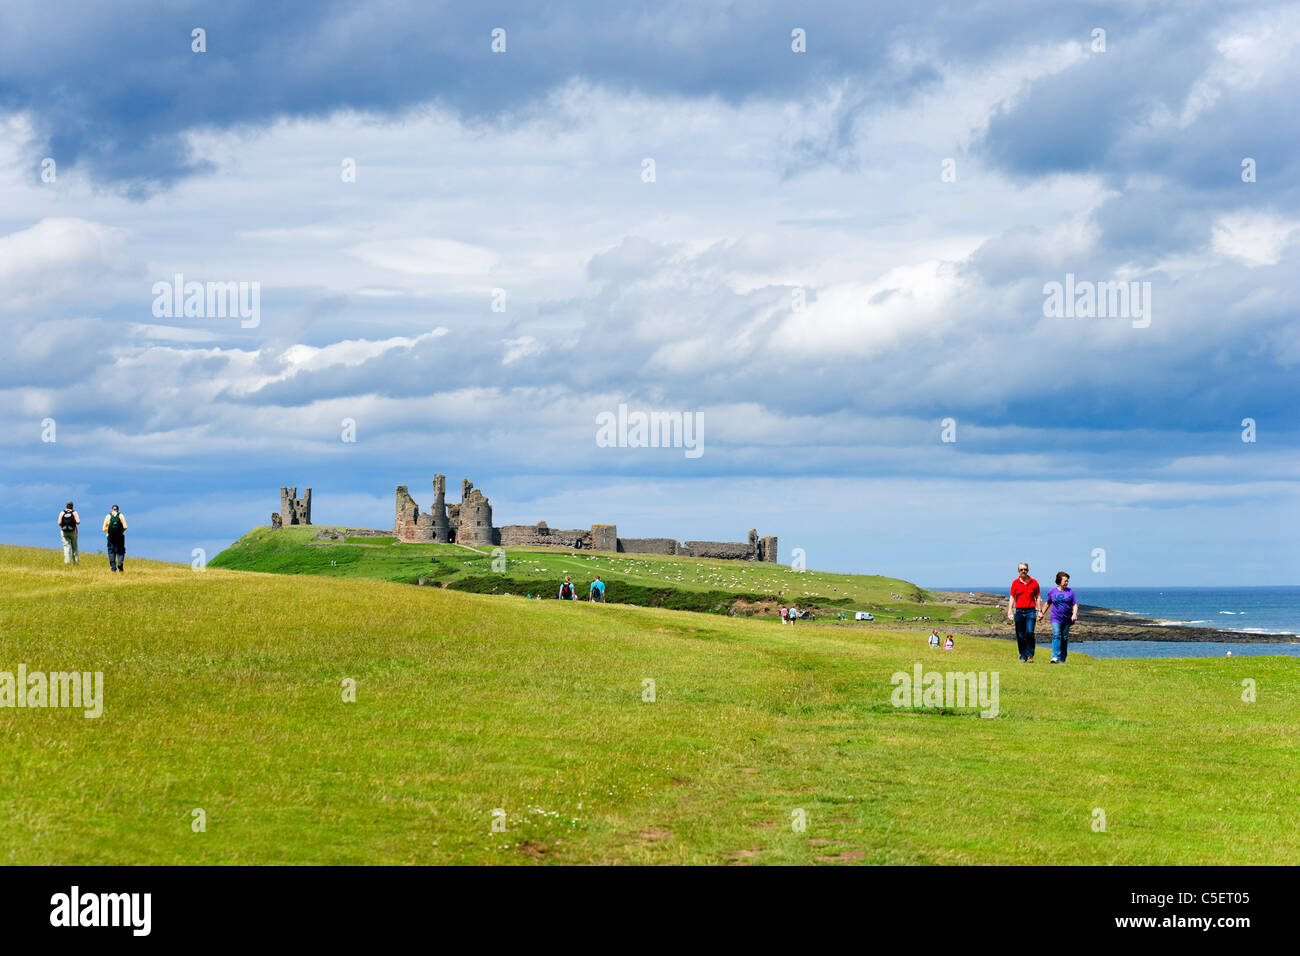 Les promeneurs sur le chemin entre Craster et Château de Dunstanburgh sur la côte de Northumberland, Angleterre du Nord-Est, Royaume-Uni Banque D'Images